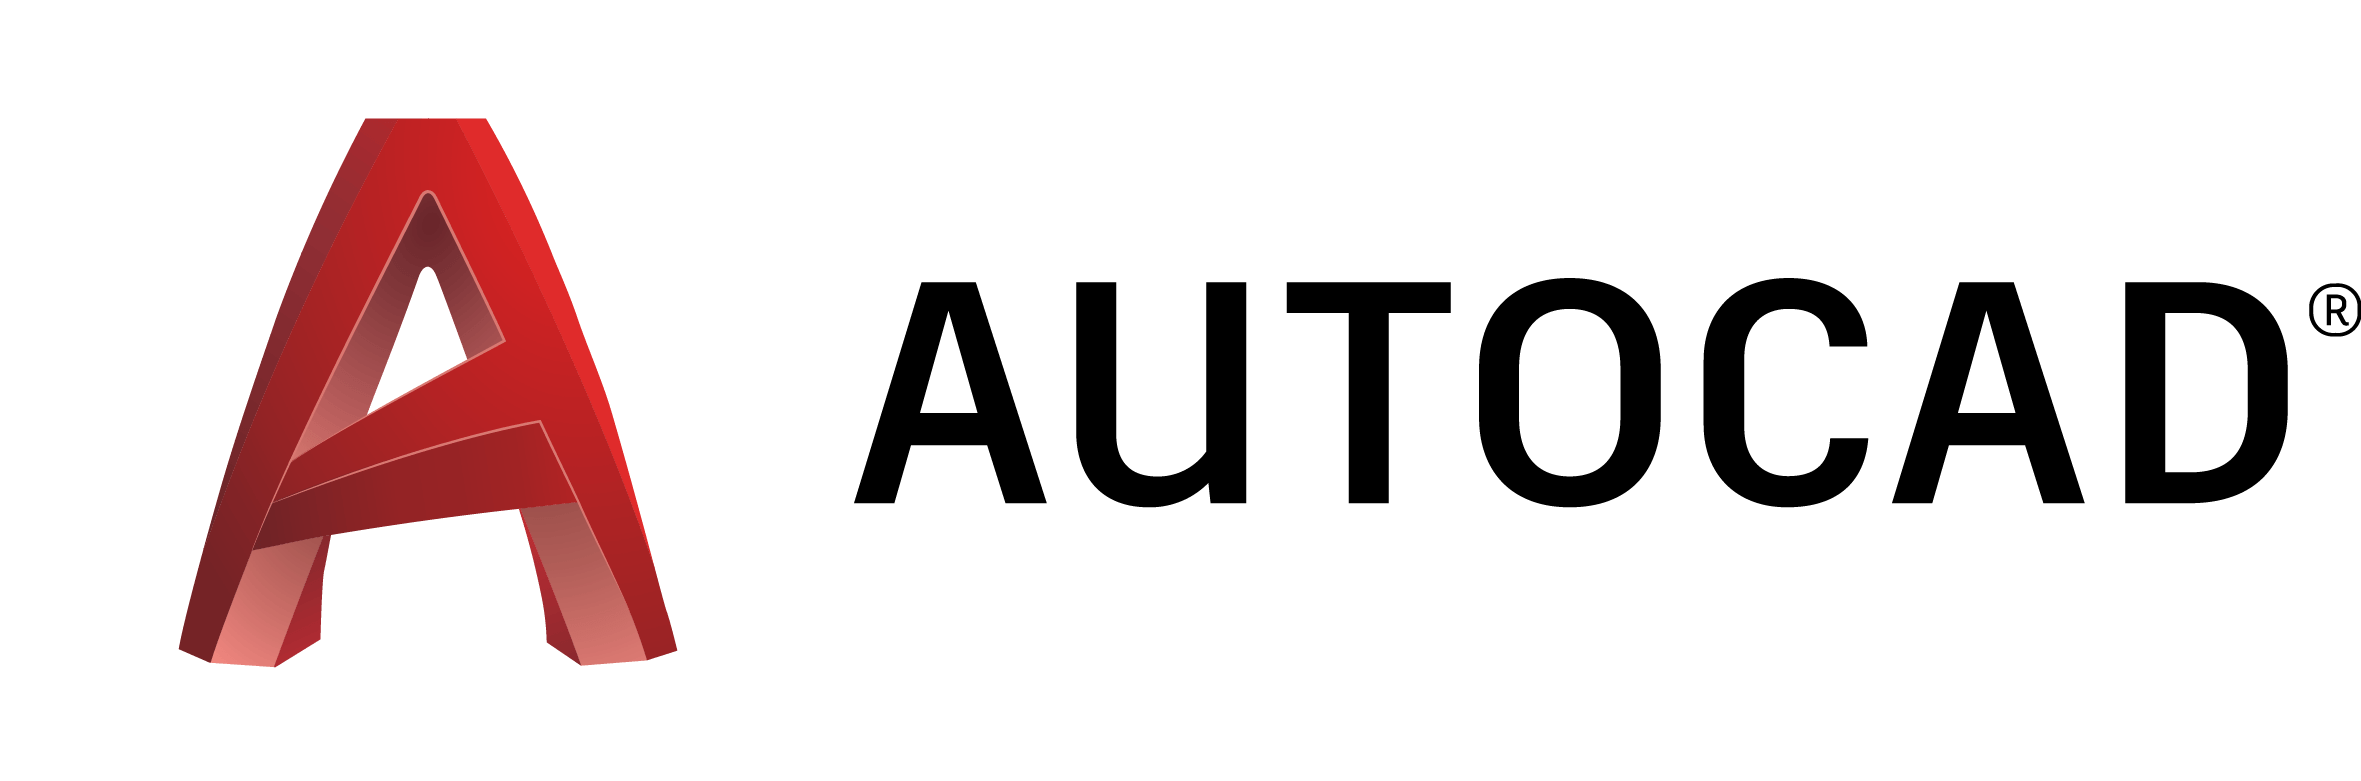 AutoCAD Logo - AMFG Supports AutoCAD